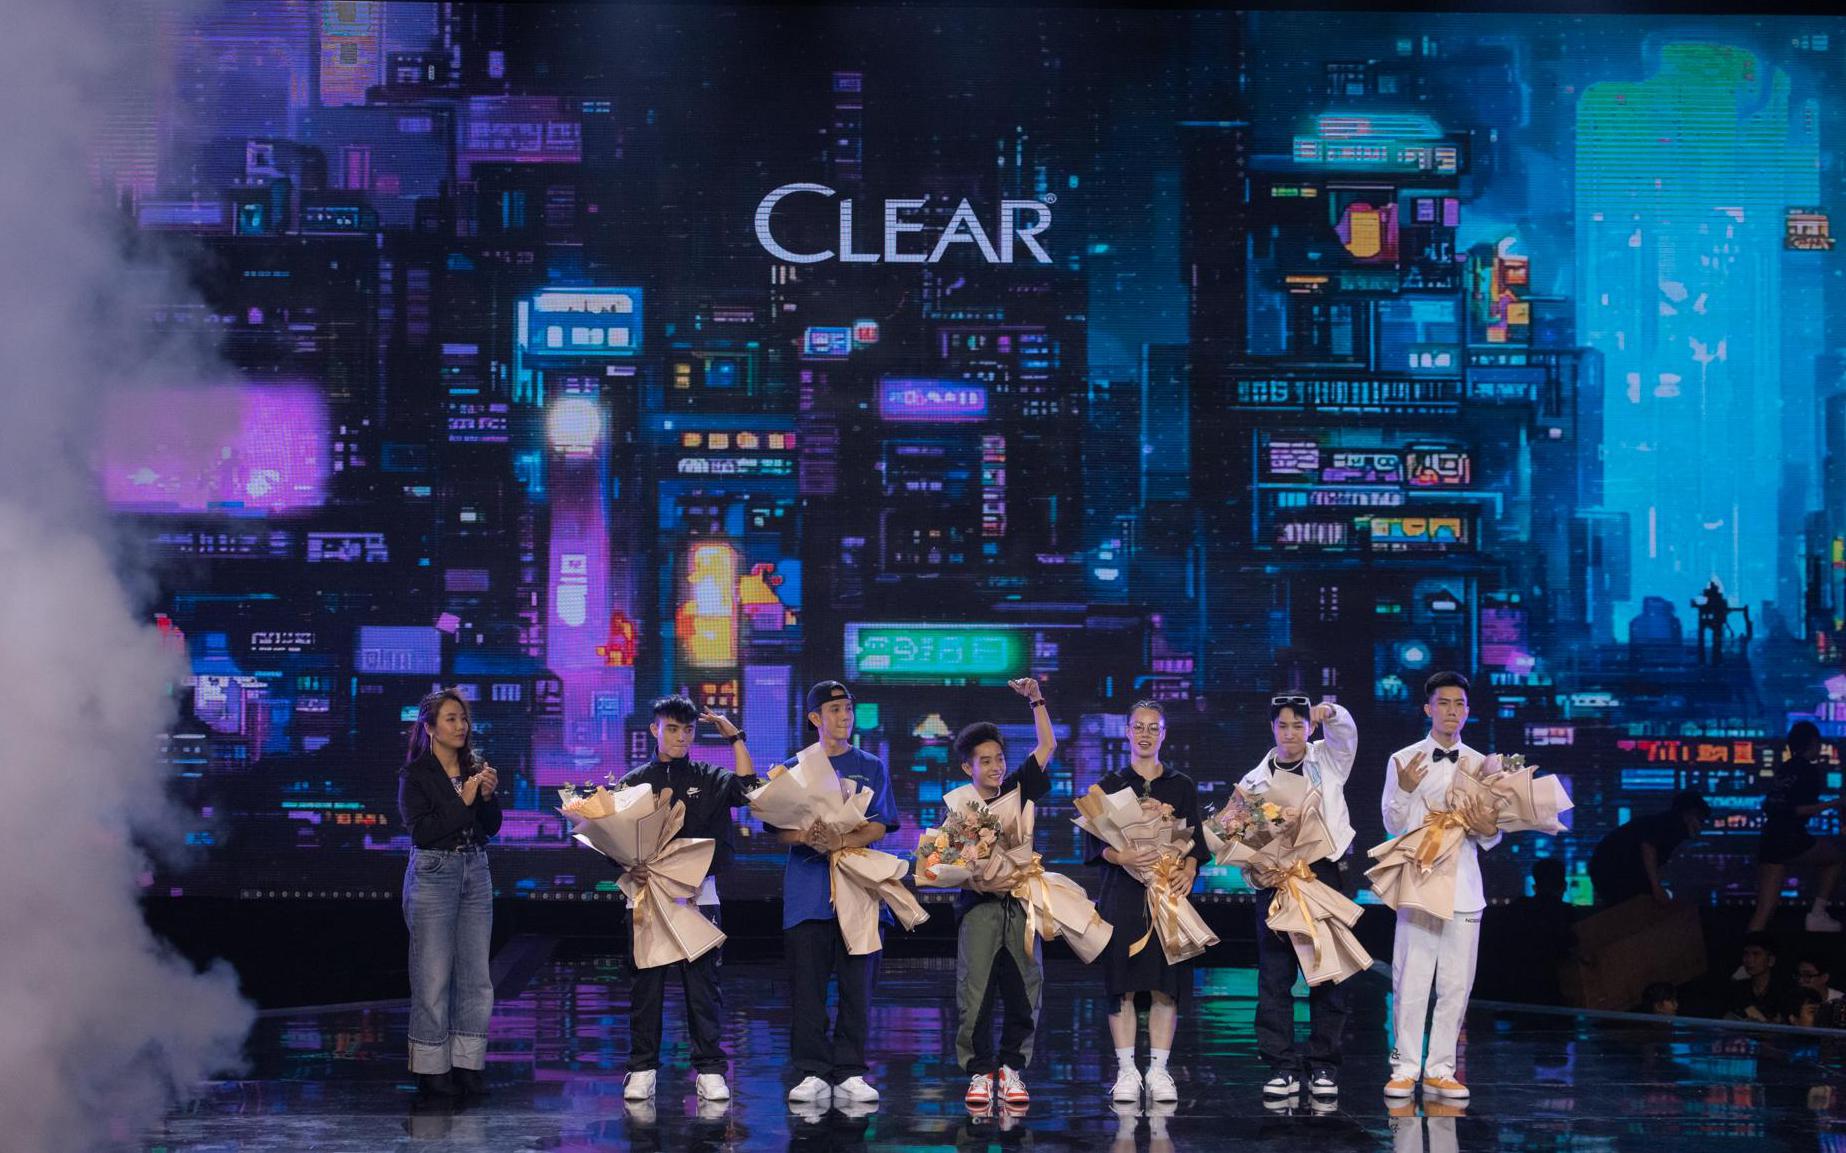 CLEAR thưởng nóng 600 triệu cho các thí sinh ngay đêm chung kết Street Dance Việt Nam, lan tỏa thông điệp “Đầu Lạnh Tim Nóng” bằng chuỗi hành động thiết thực